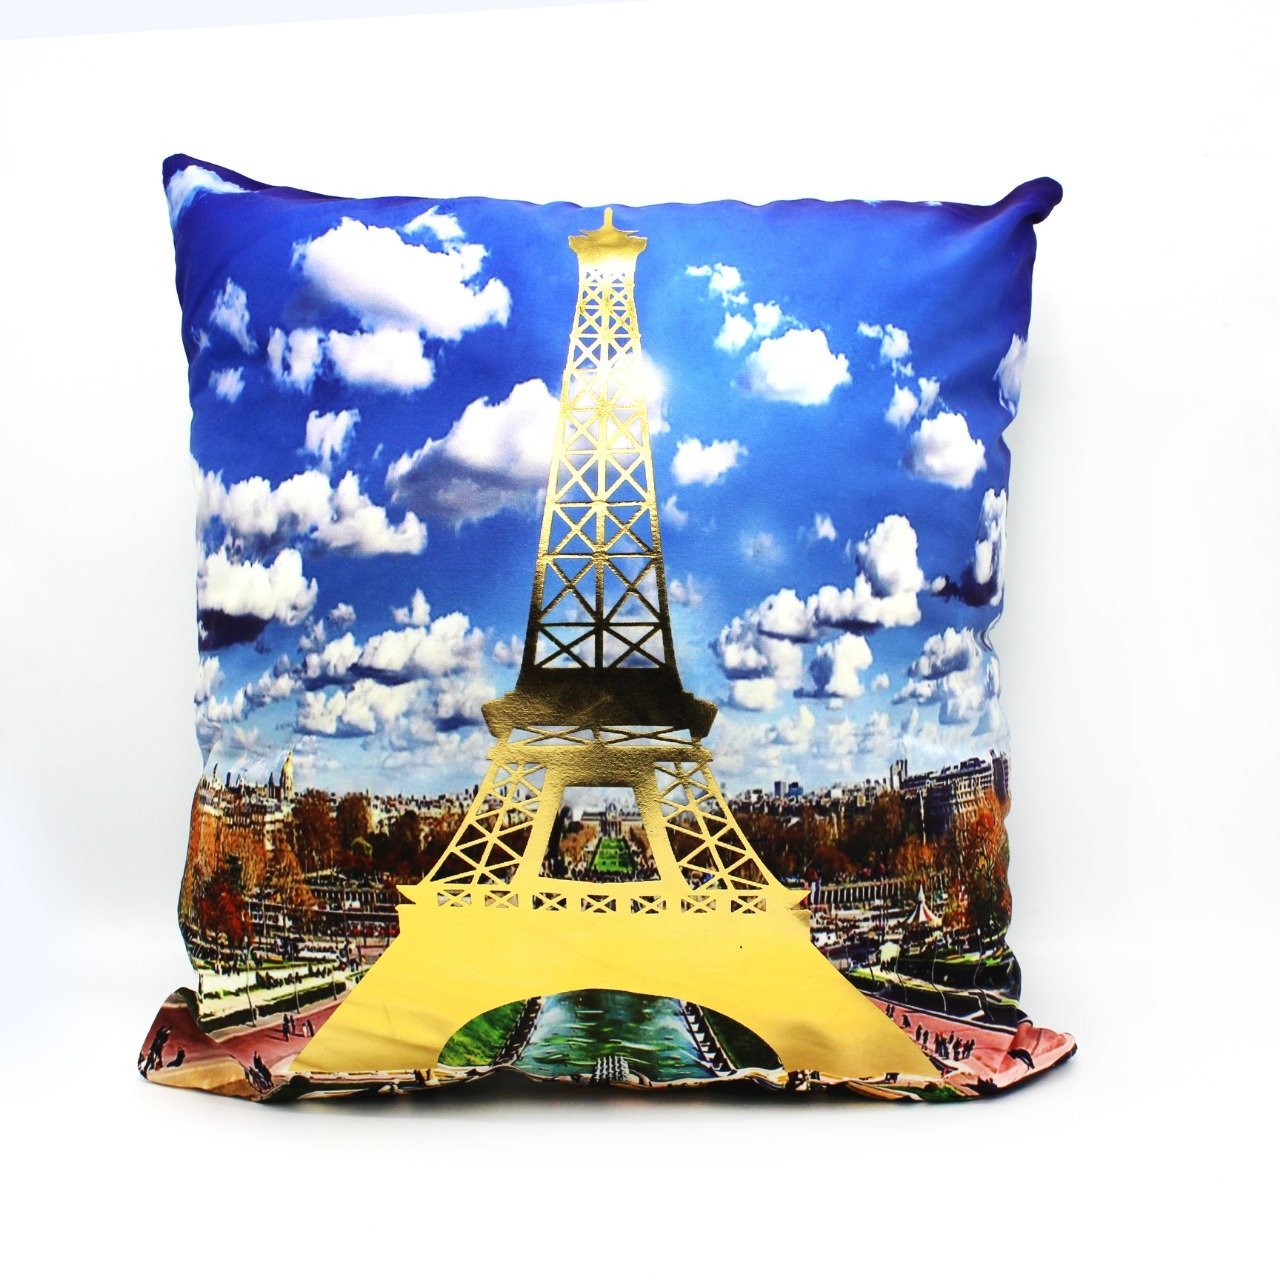 Eiffel tower cushion cover - waseeh.com